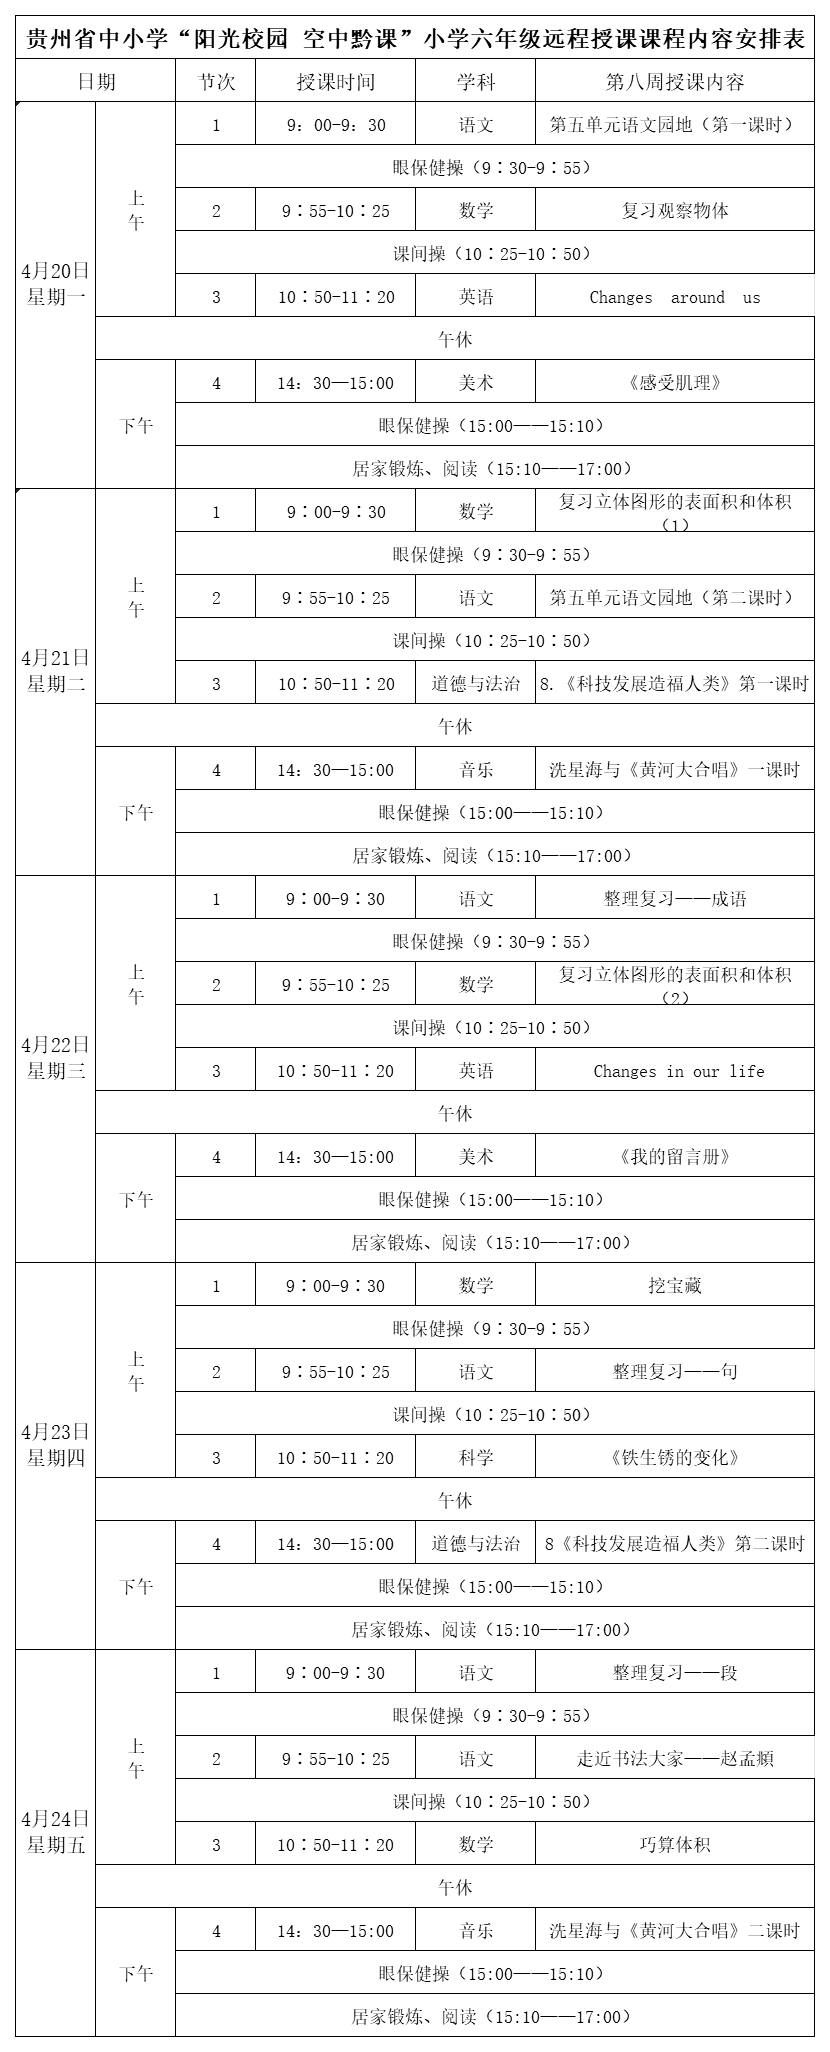 贵州中小学“空中课堂”课程表完整版公布（4月20日14